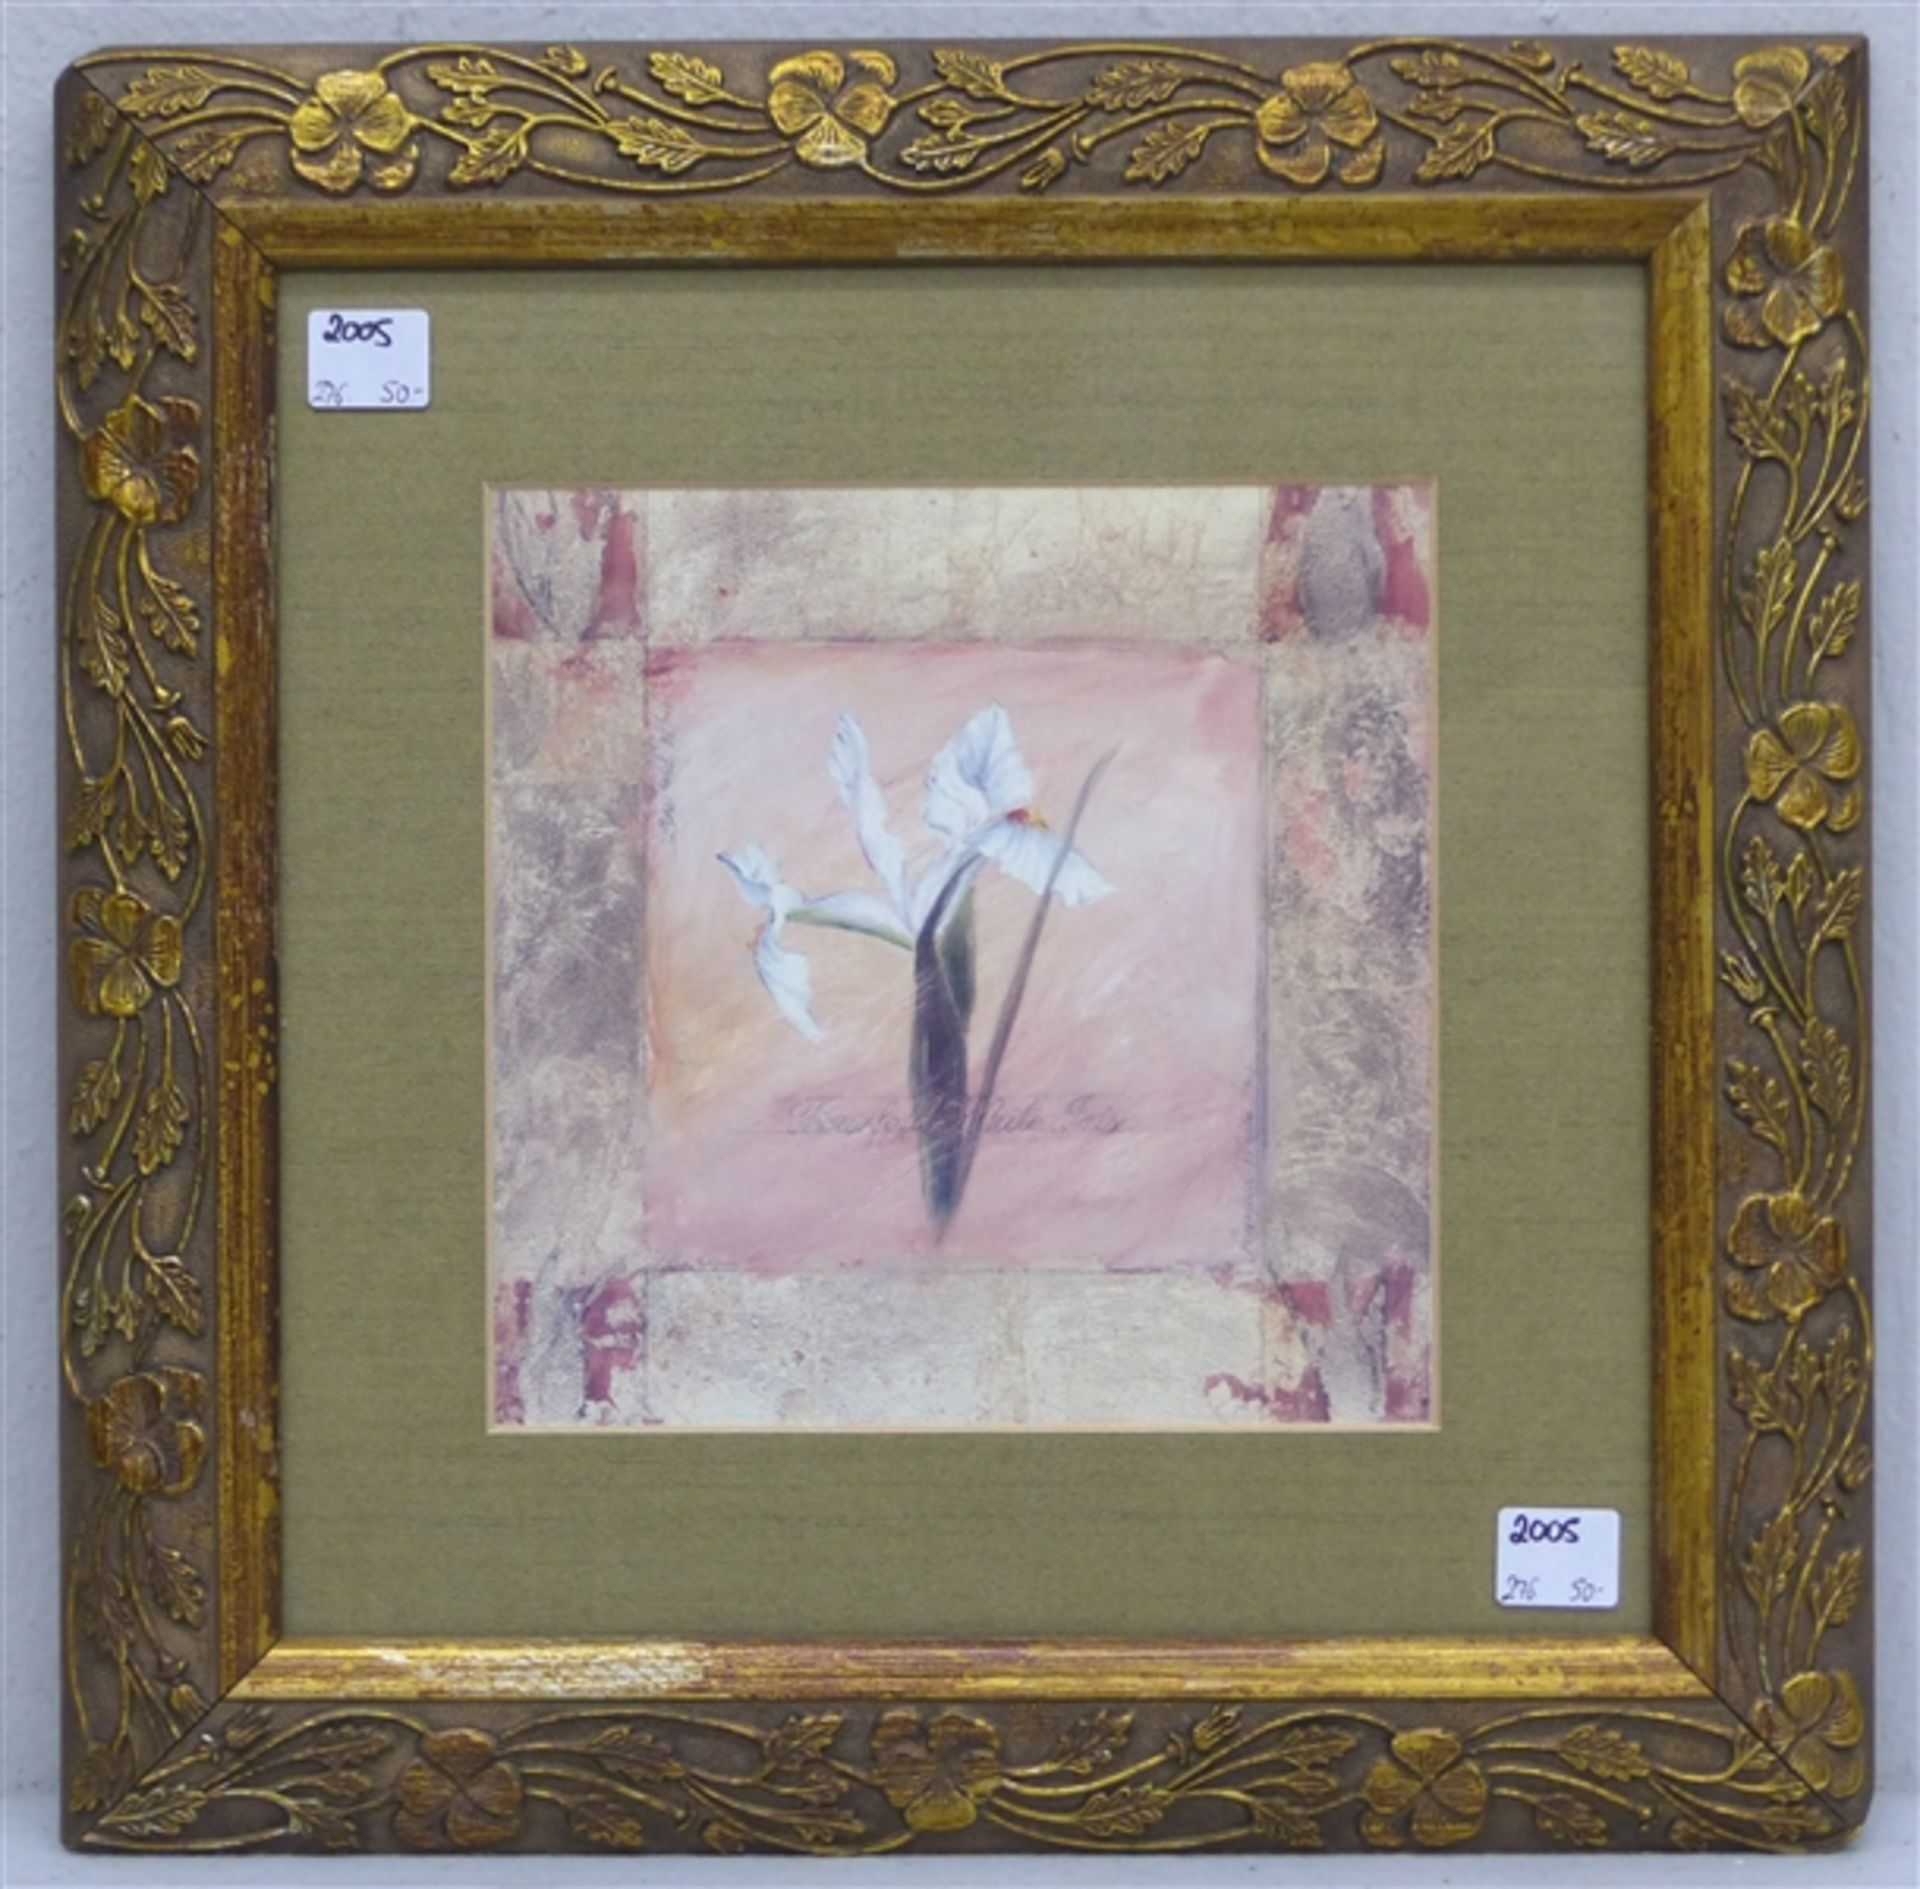 Kunstdruck 20. Jh., Jugendstil, weiße Schwertlilie, 18 x 18 cm, im Rahmen,